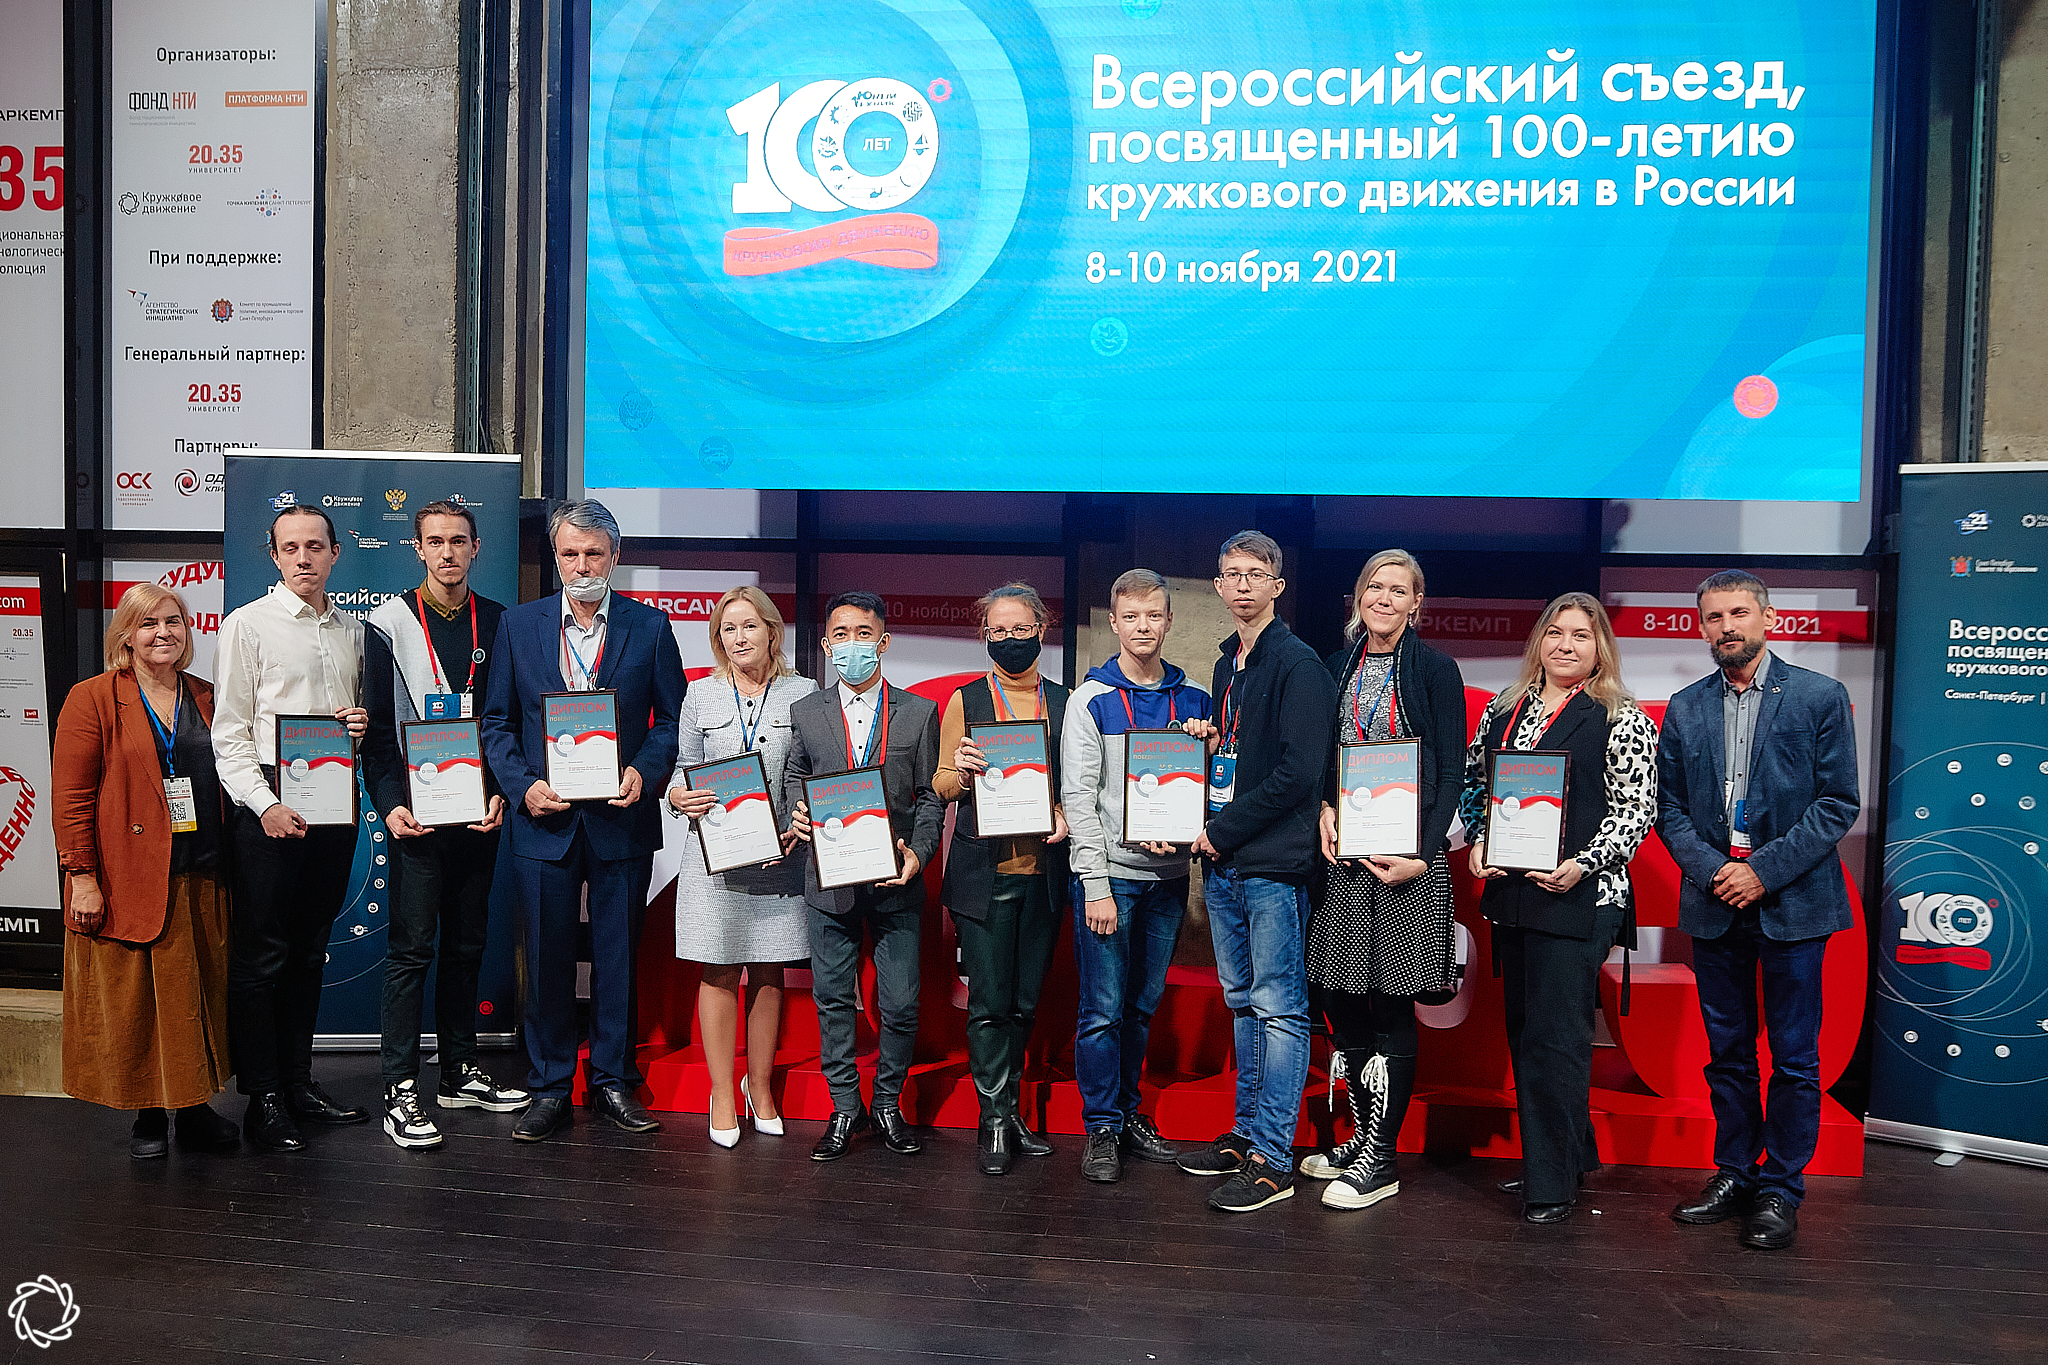 Руководитель ижевского IТ-куба участвует во съезде, посвященном 100-летию кружкового движения